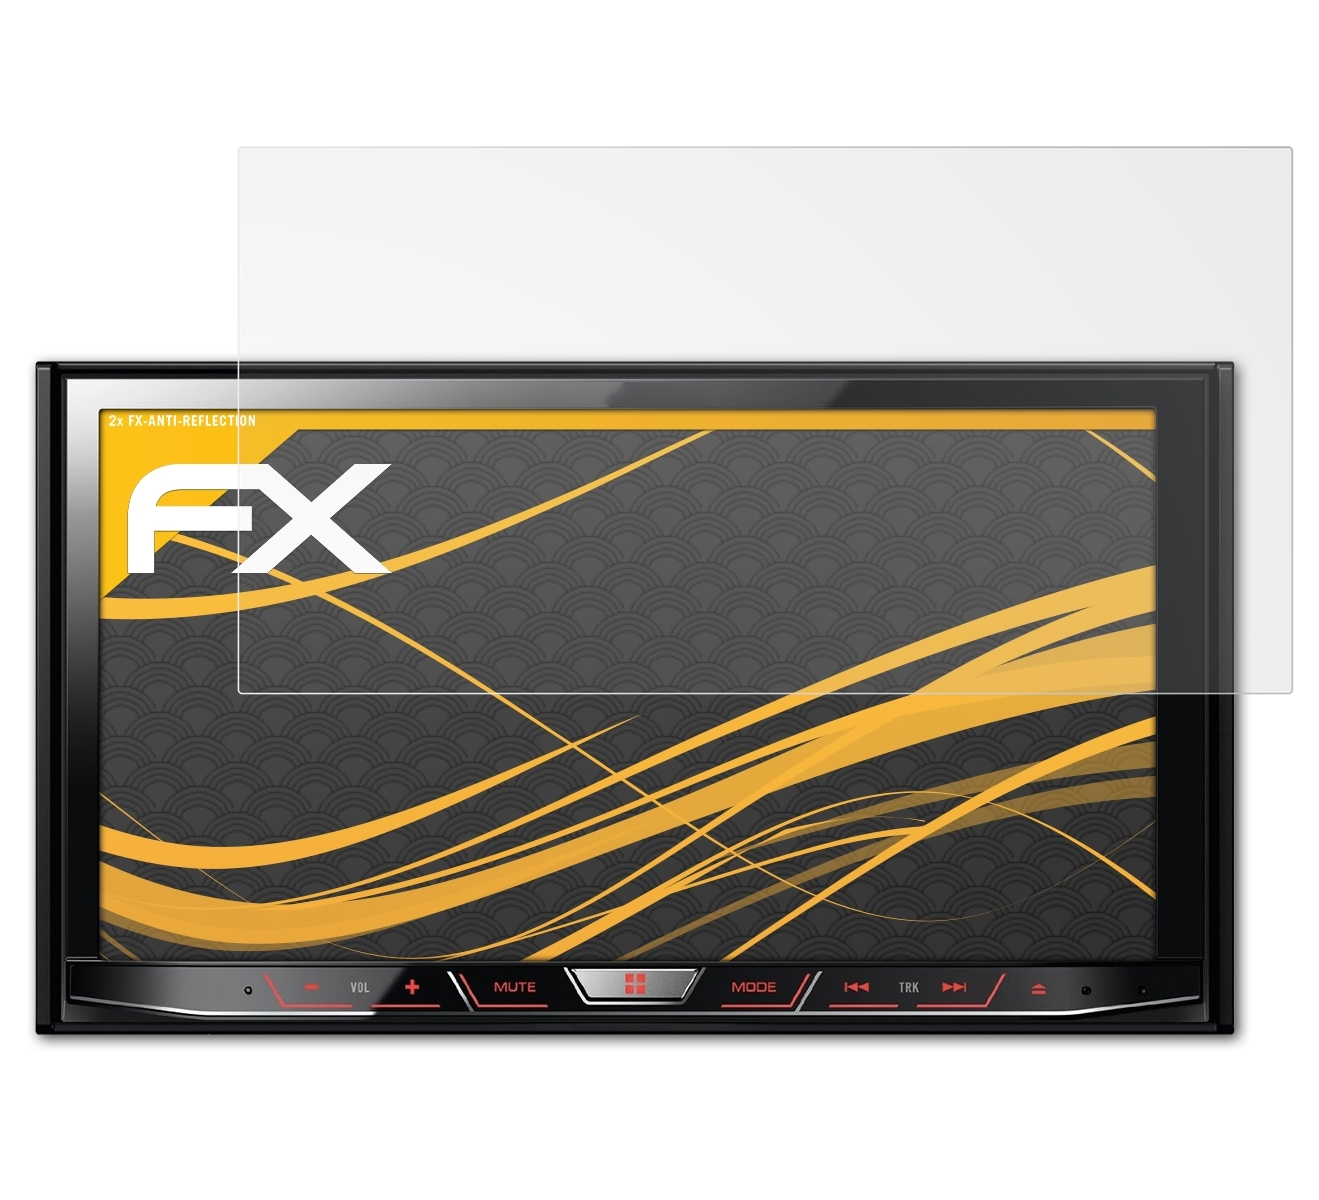 ATFOLIX 2x FX-Antireflex Displayschutz(für AVH-X8600BT) Pioneer